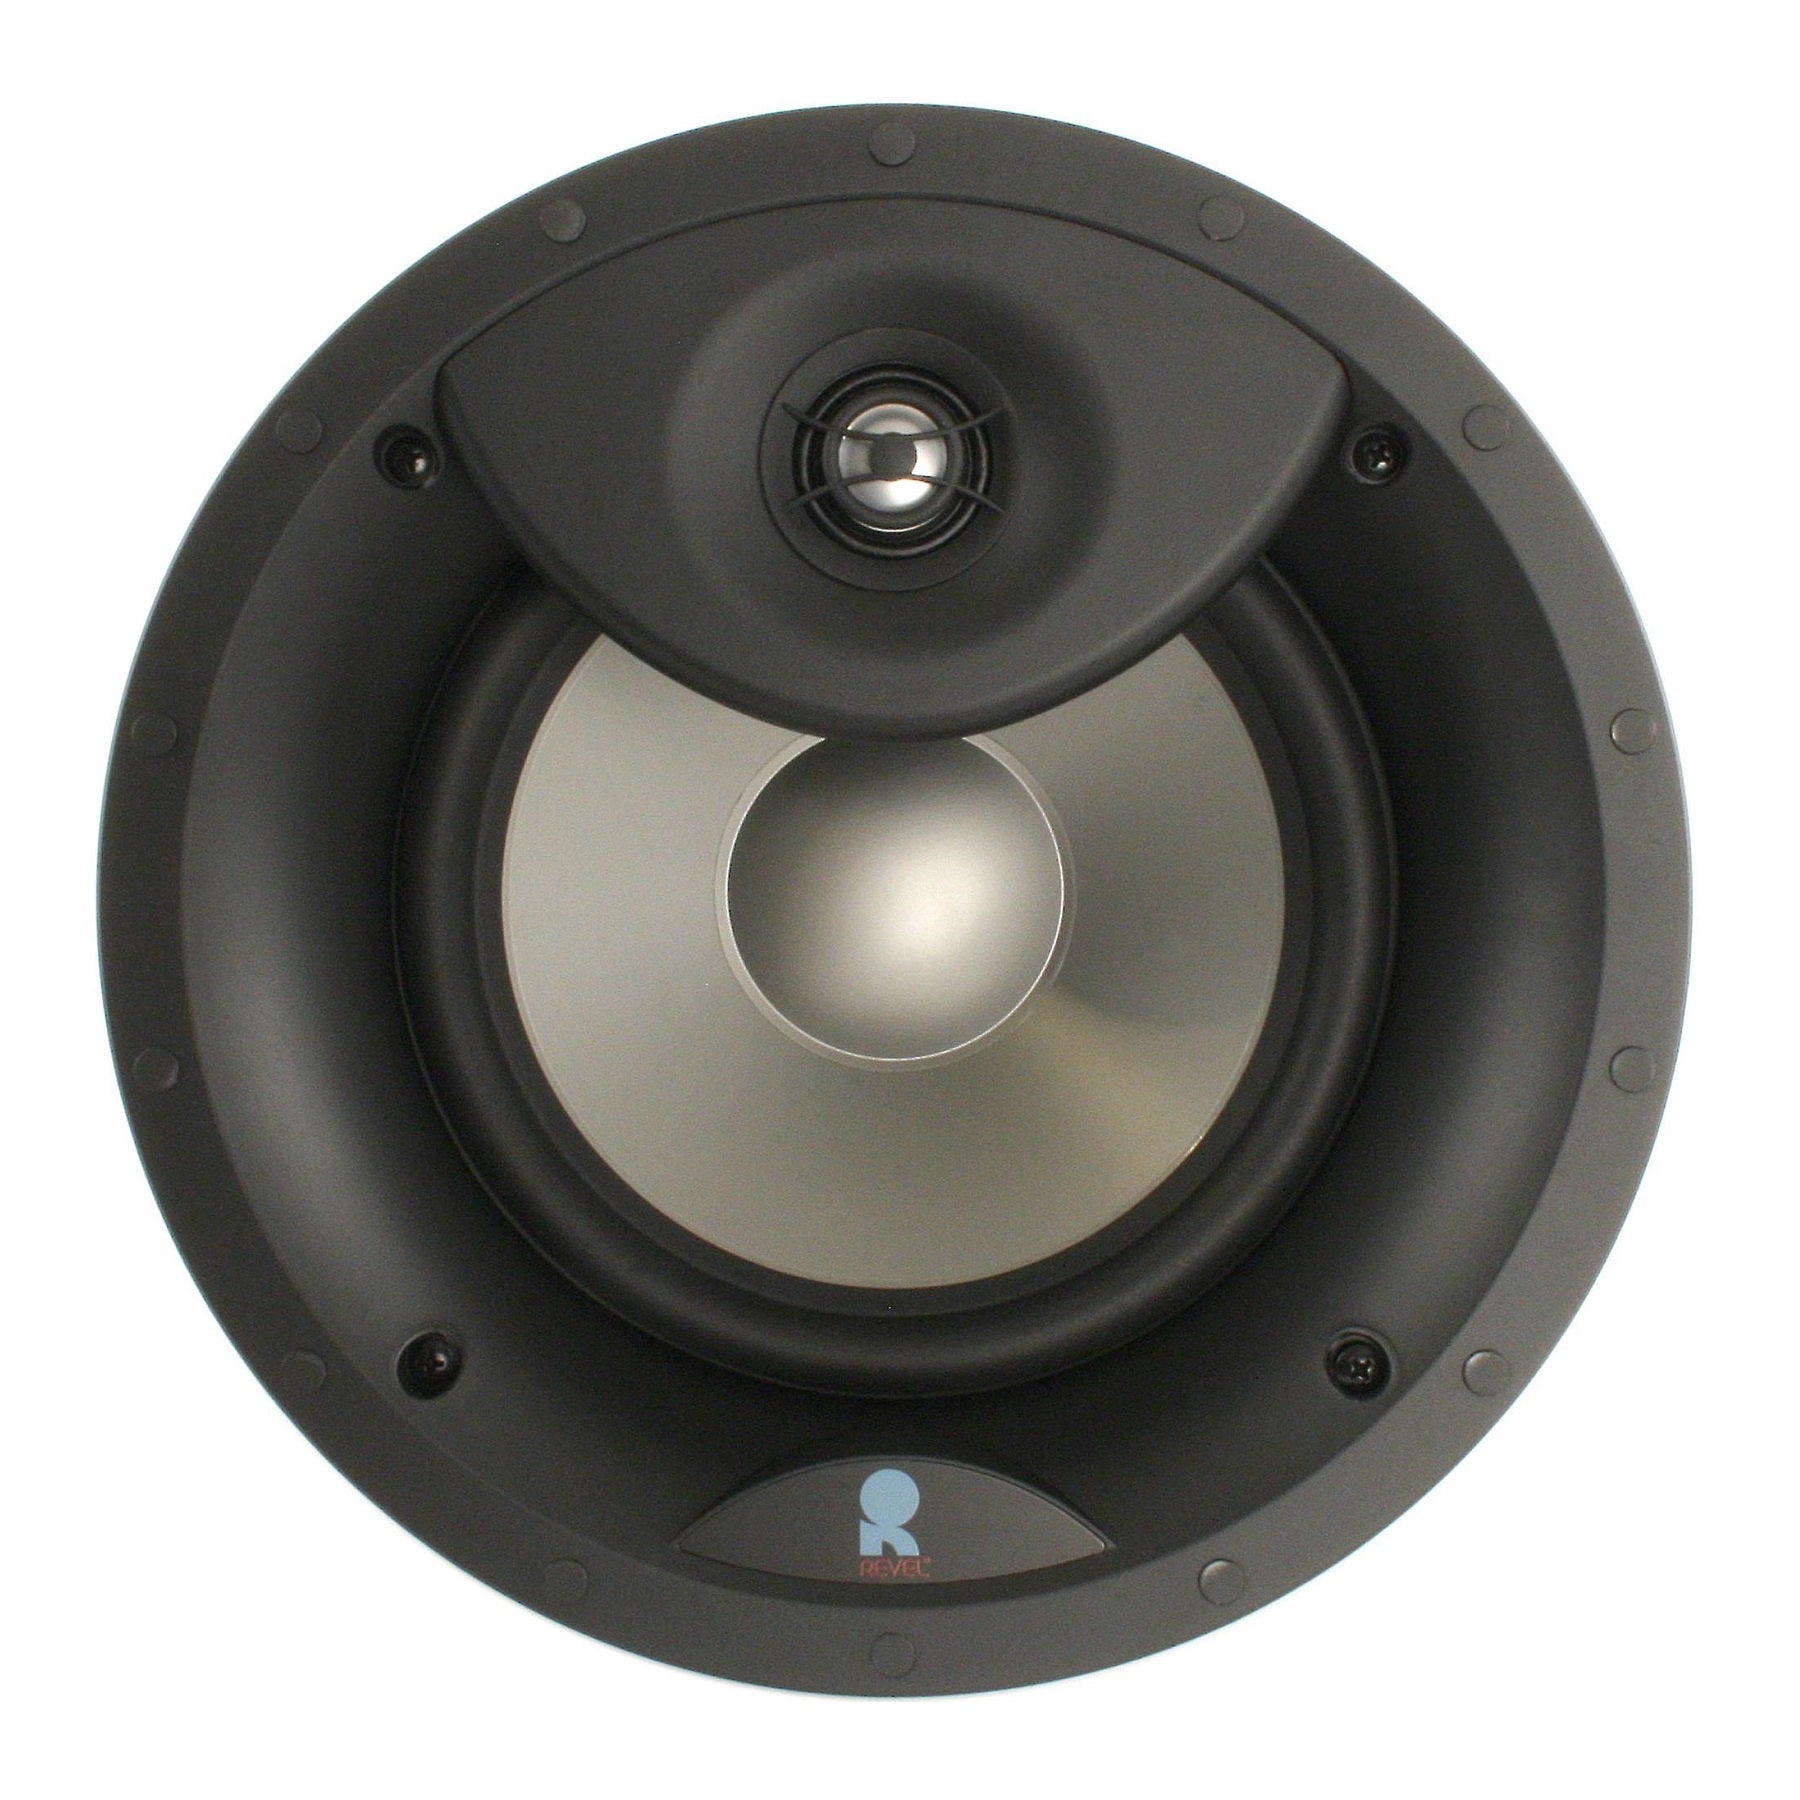 Revel C383 8" In-Ceiling Loudspeaker